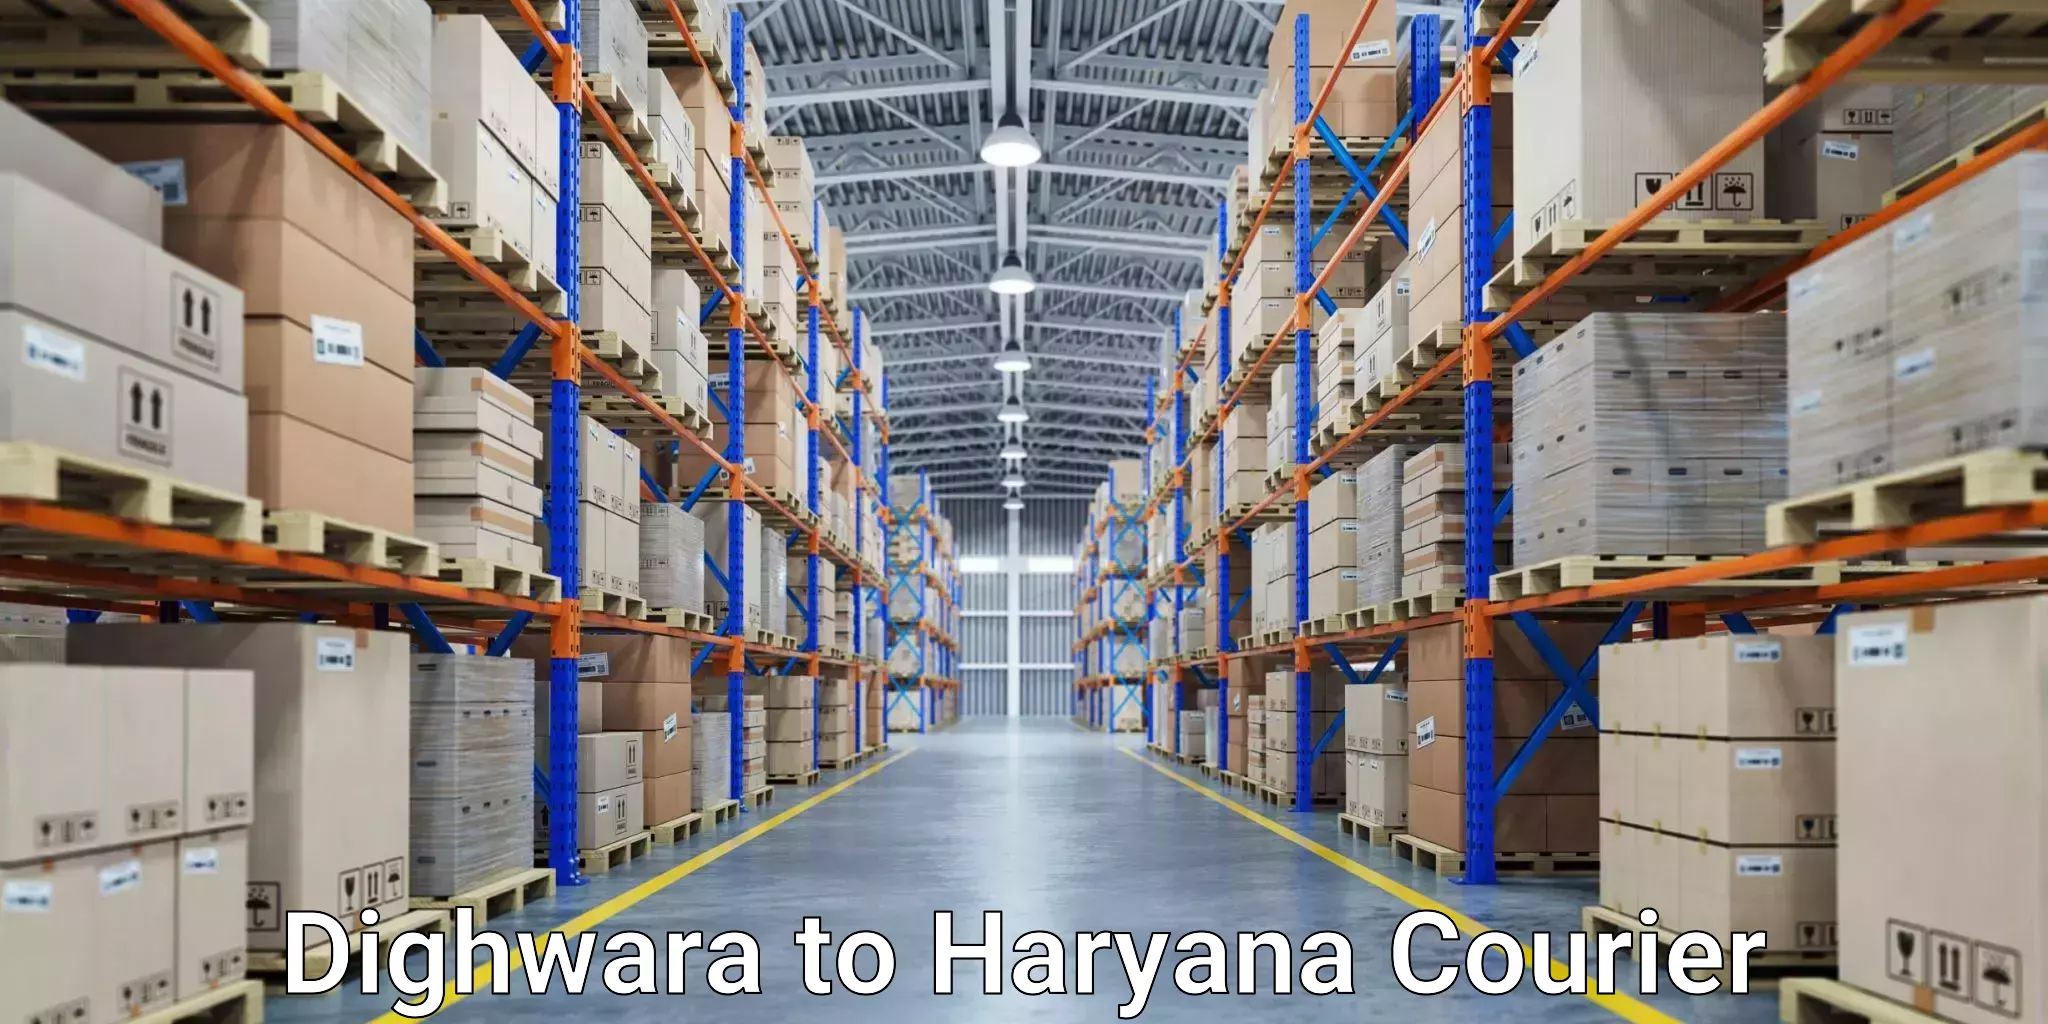 Global freight services Dighwara to Hansi